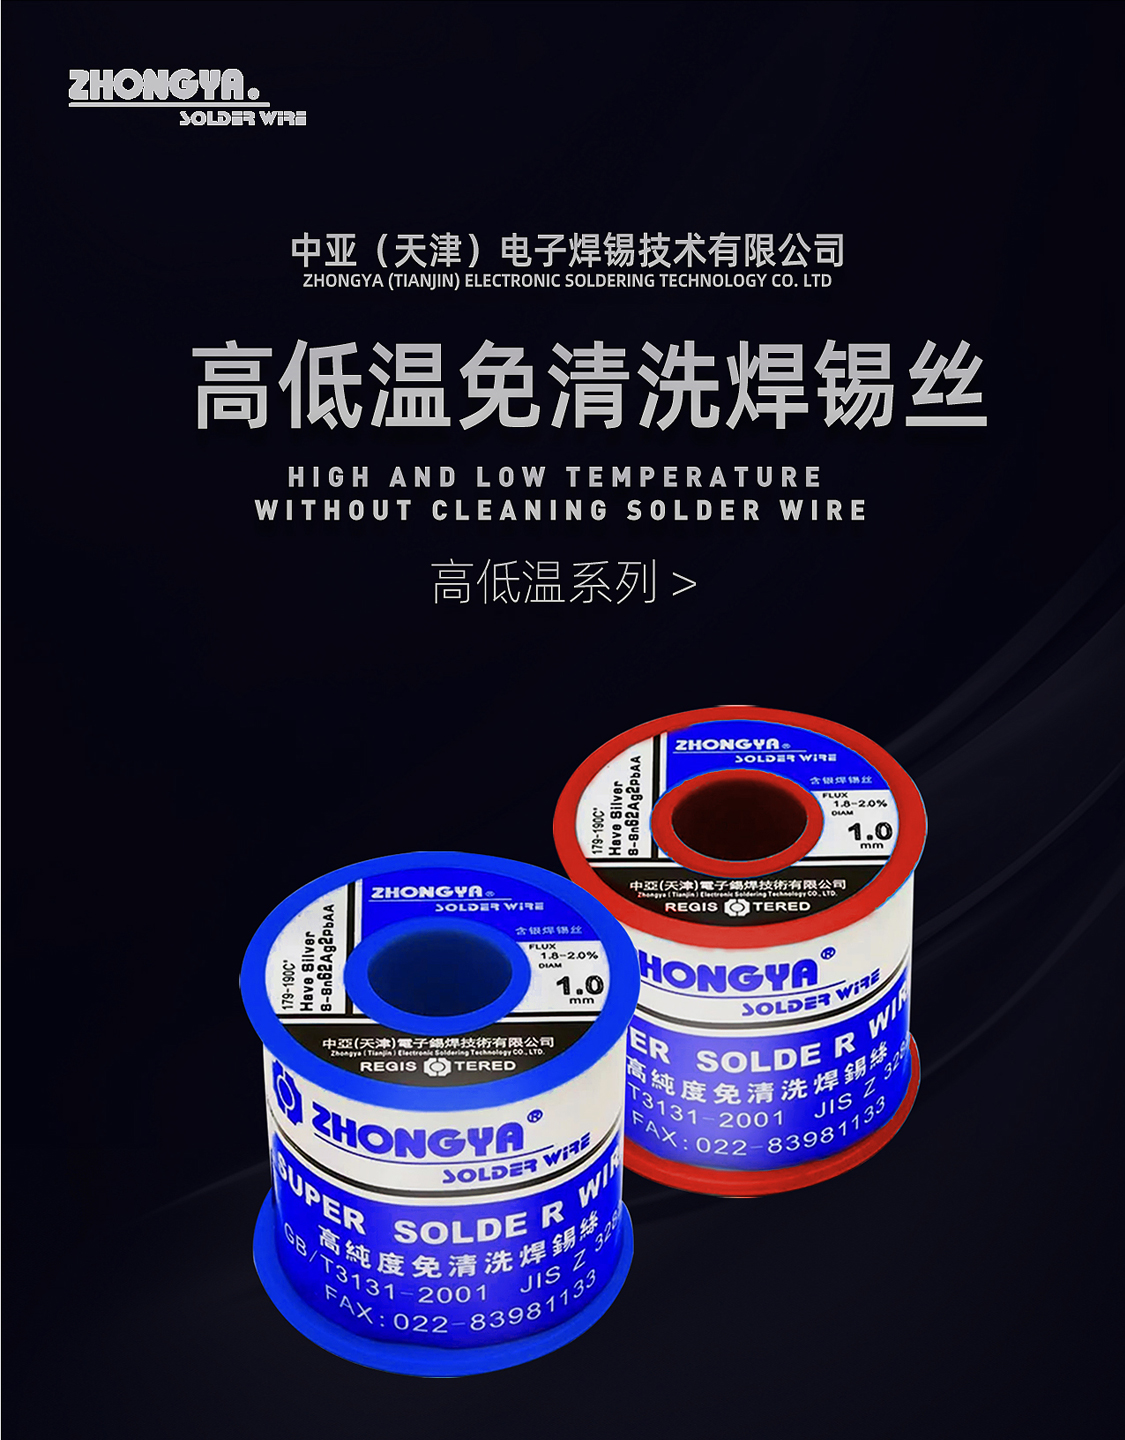 中亚(天津)电子锡焊技术有限公司